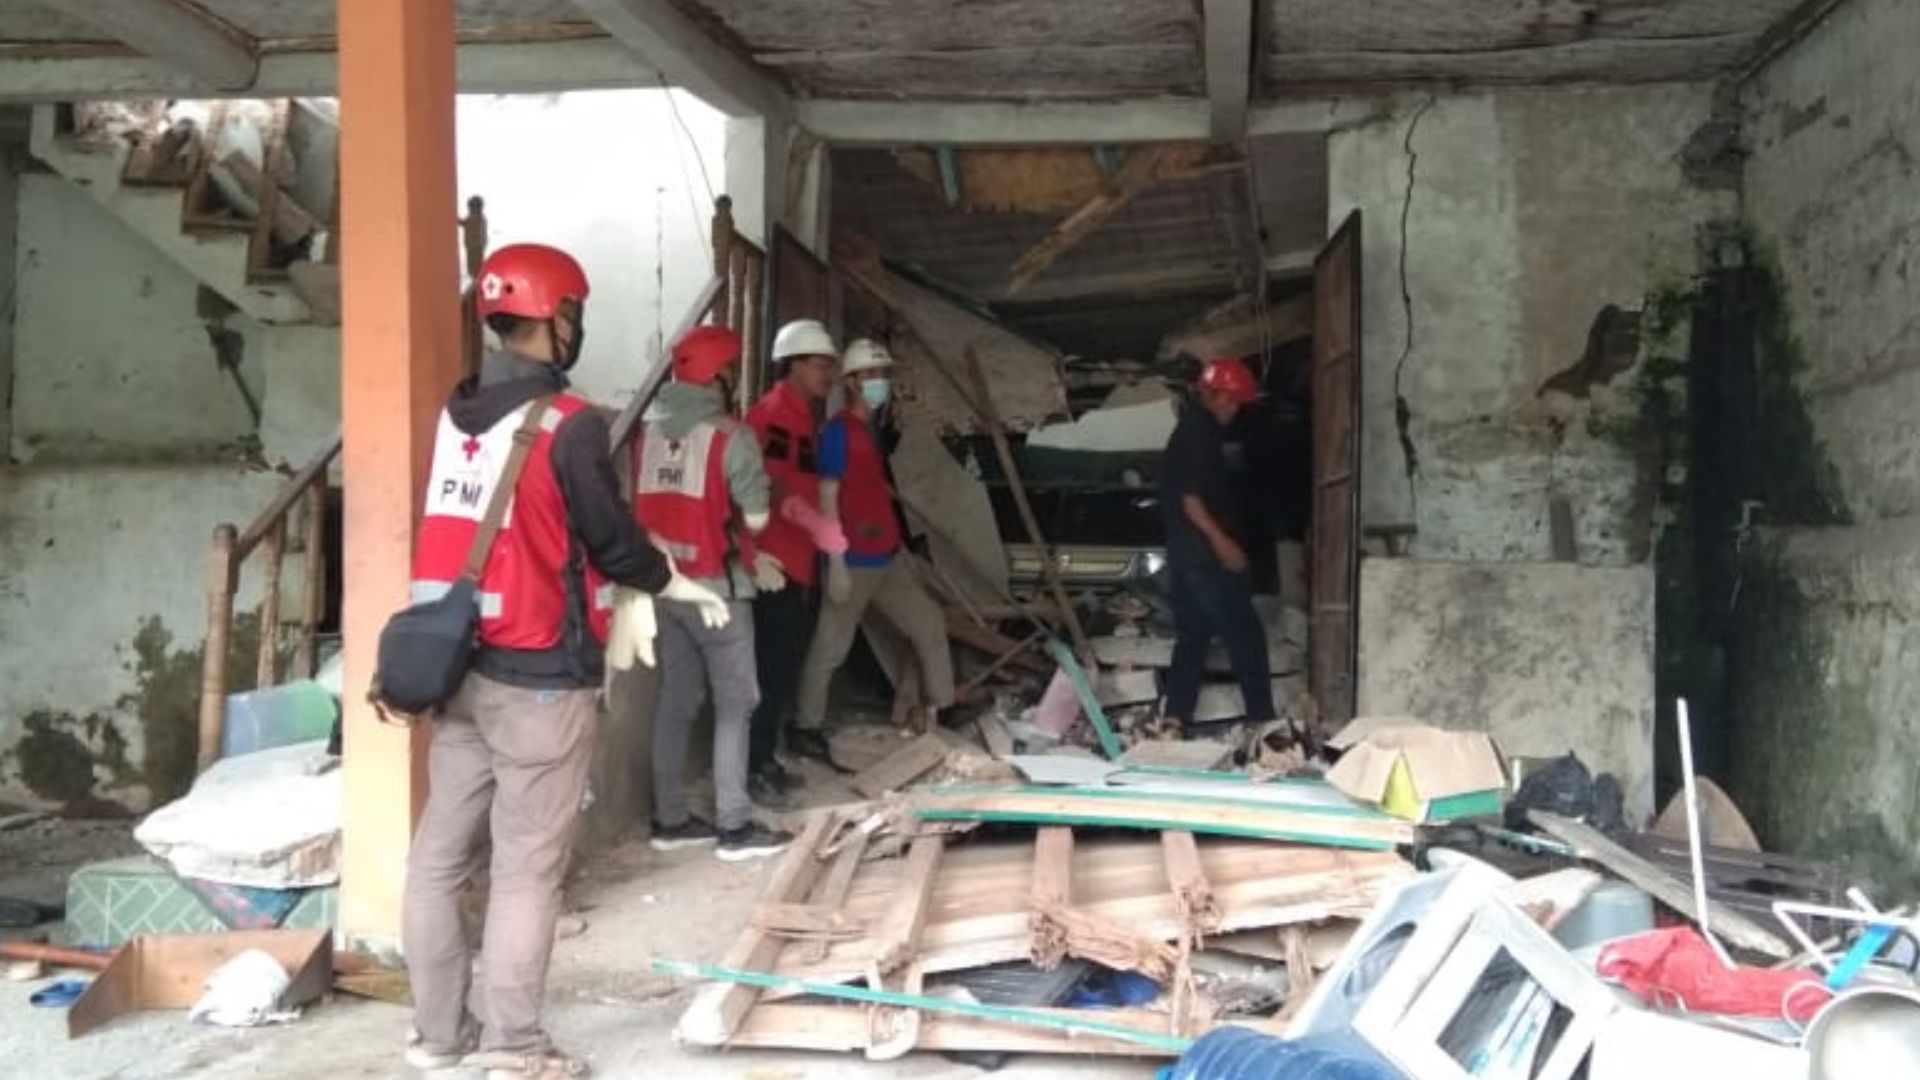 Bantuan Kemanusiaan di Indonesia |  Palang Merah Inggris